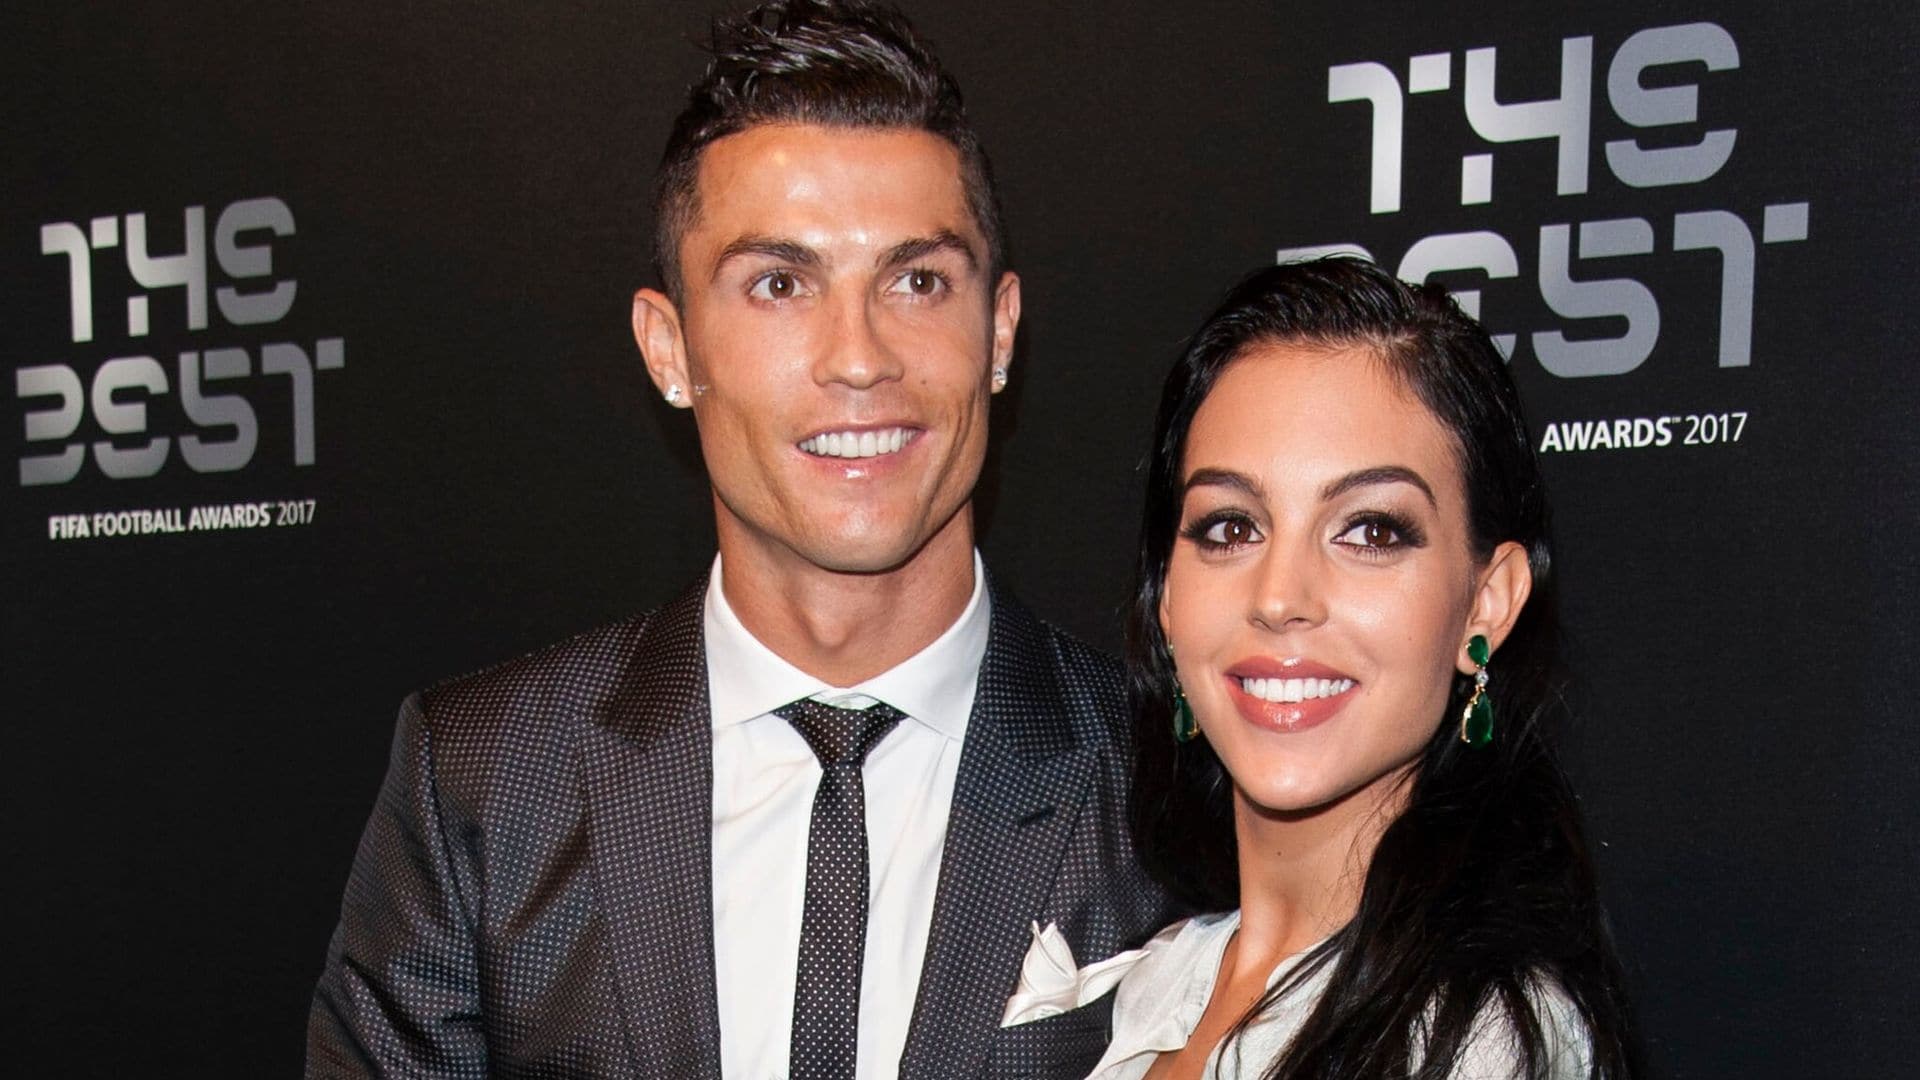 Así descubrió ¡HOLA! la relación entre Georgina Rodríguez y Cristiano Ronaldo